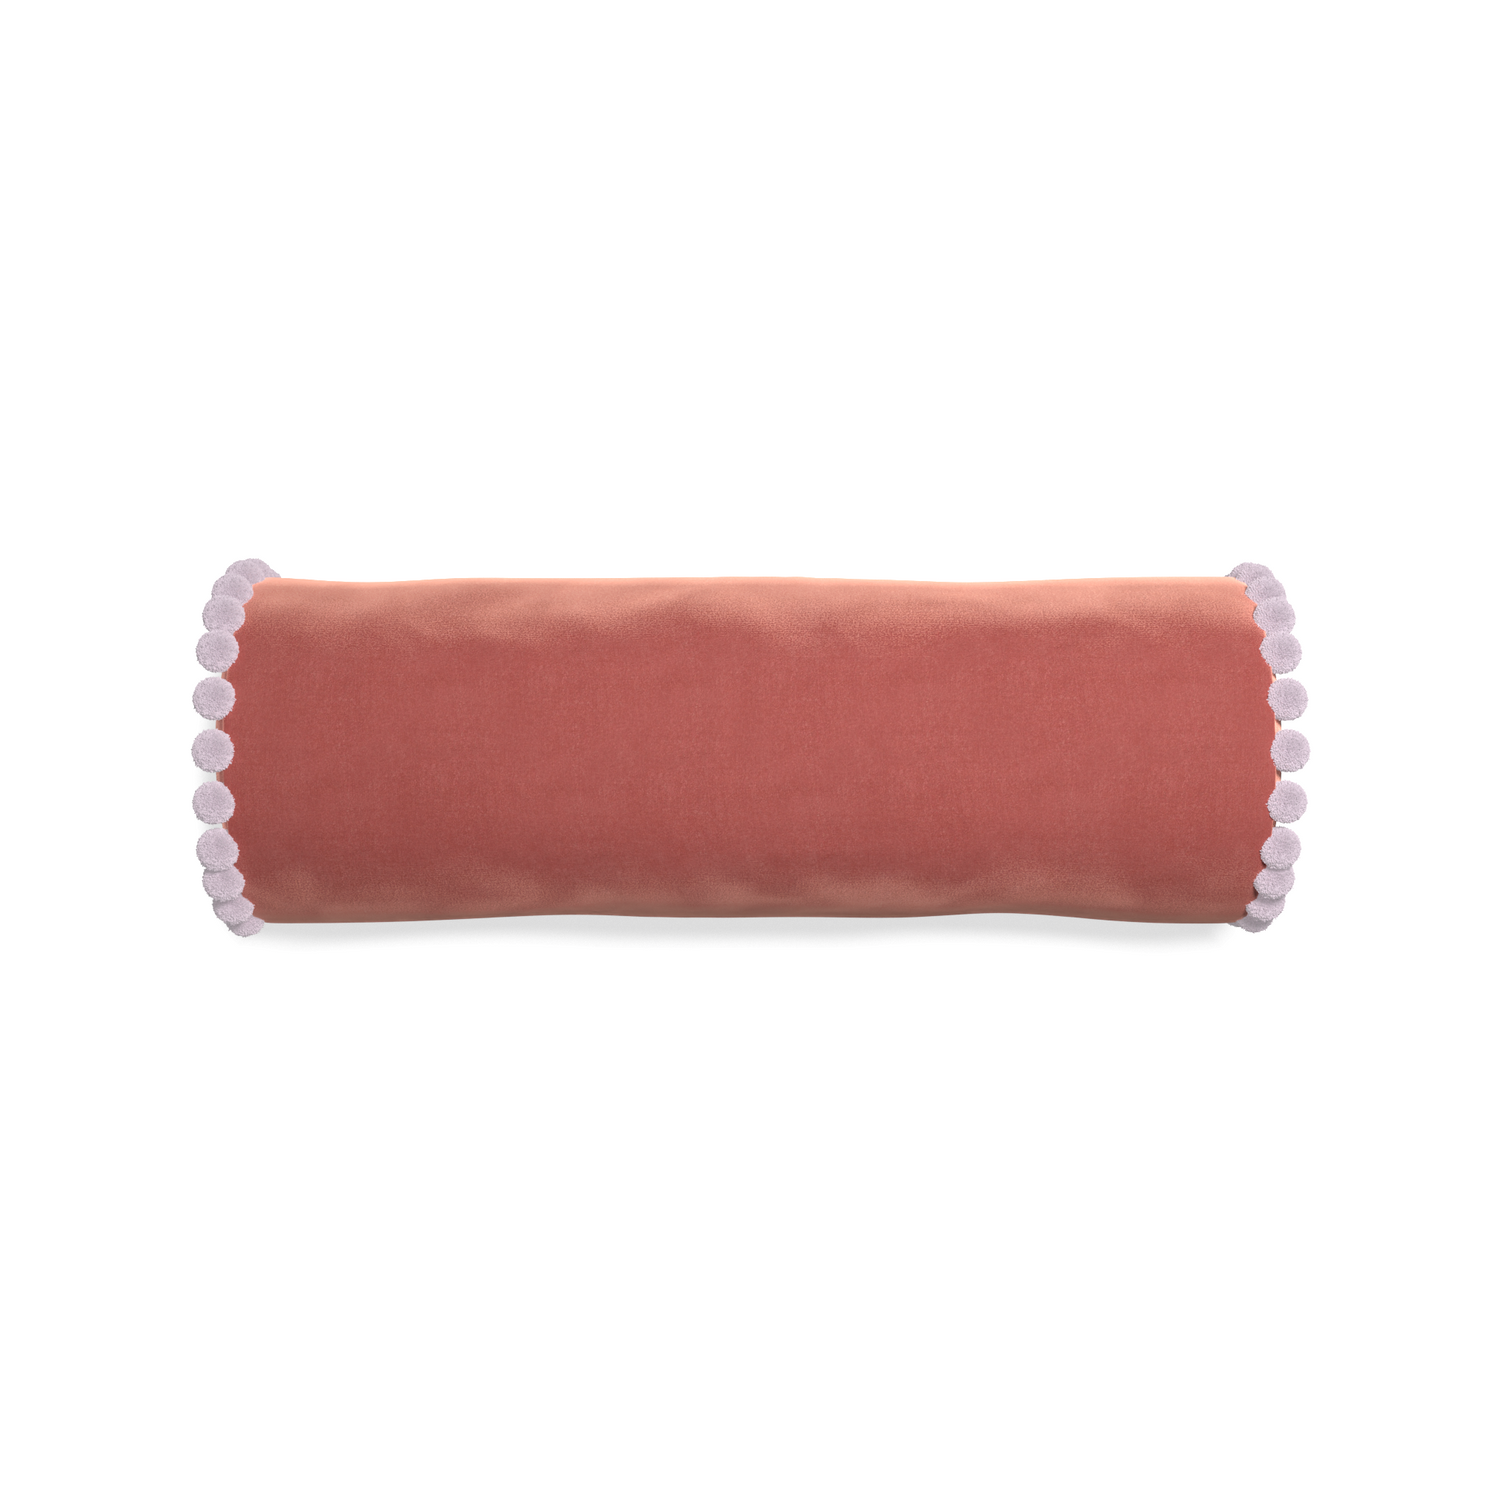 bolster coral velvet pillow with lilac pom poms